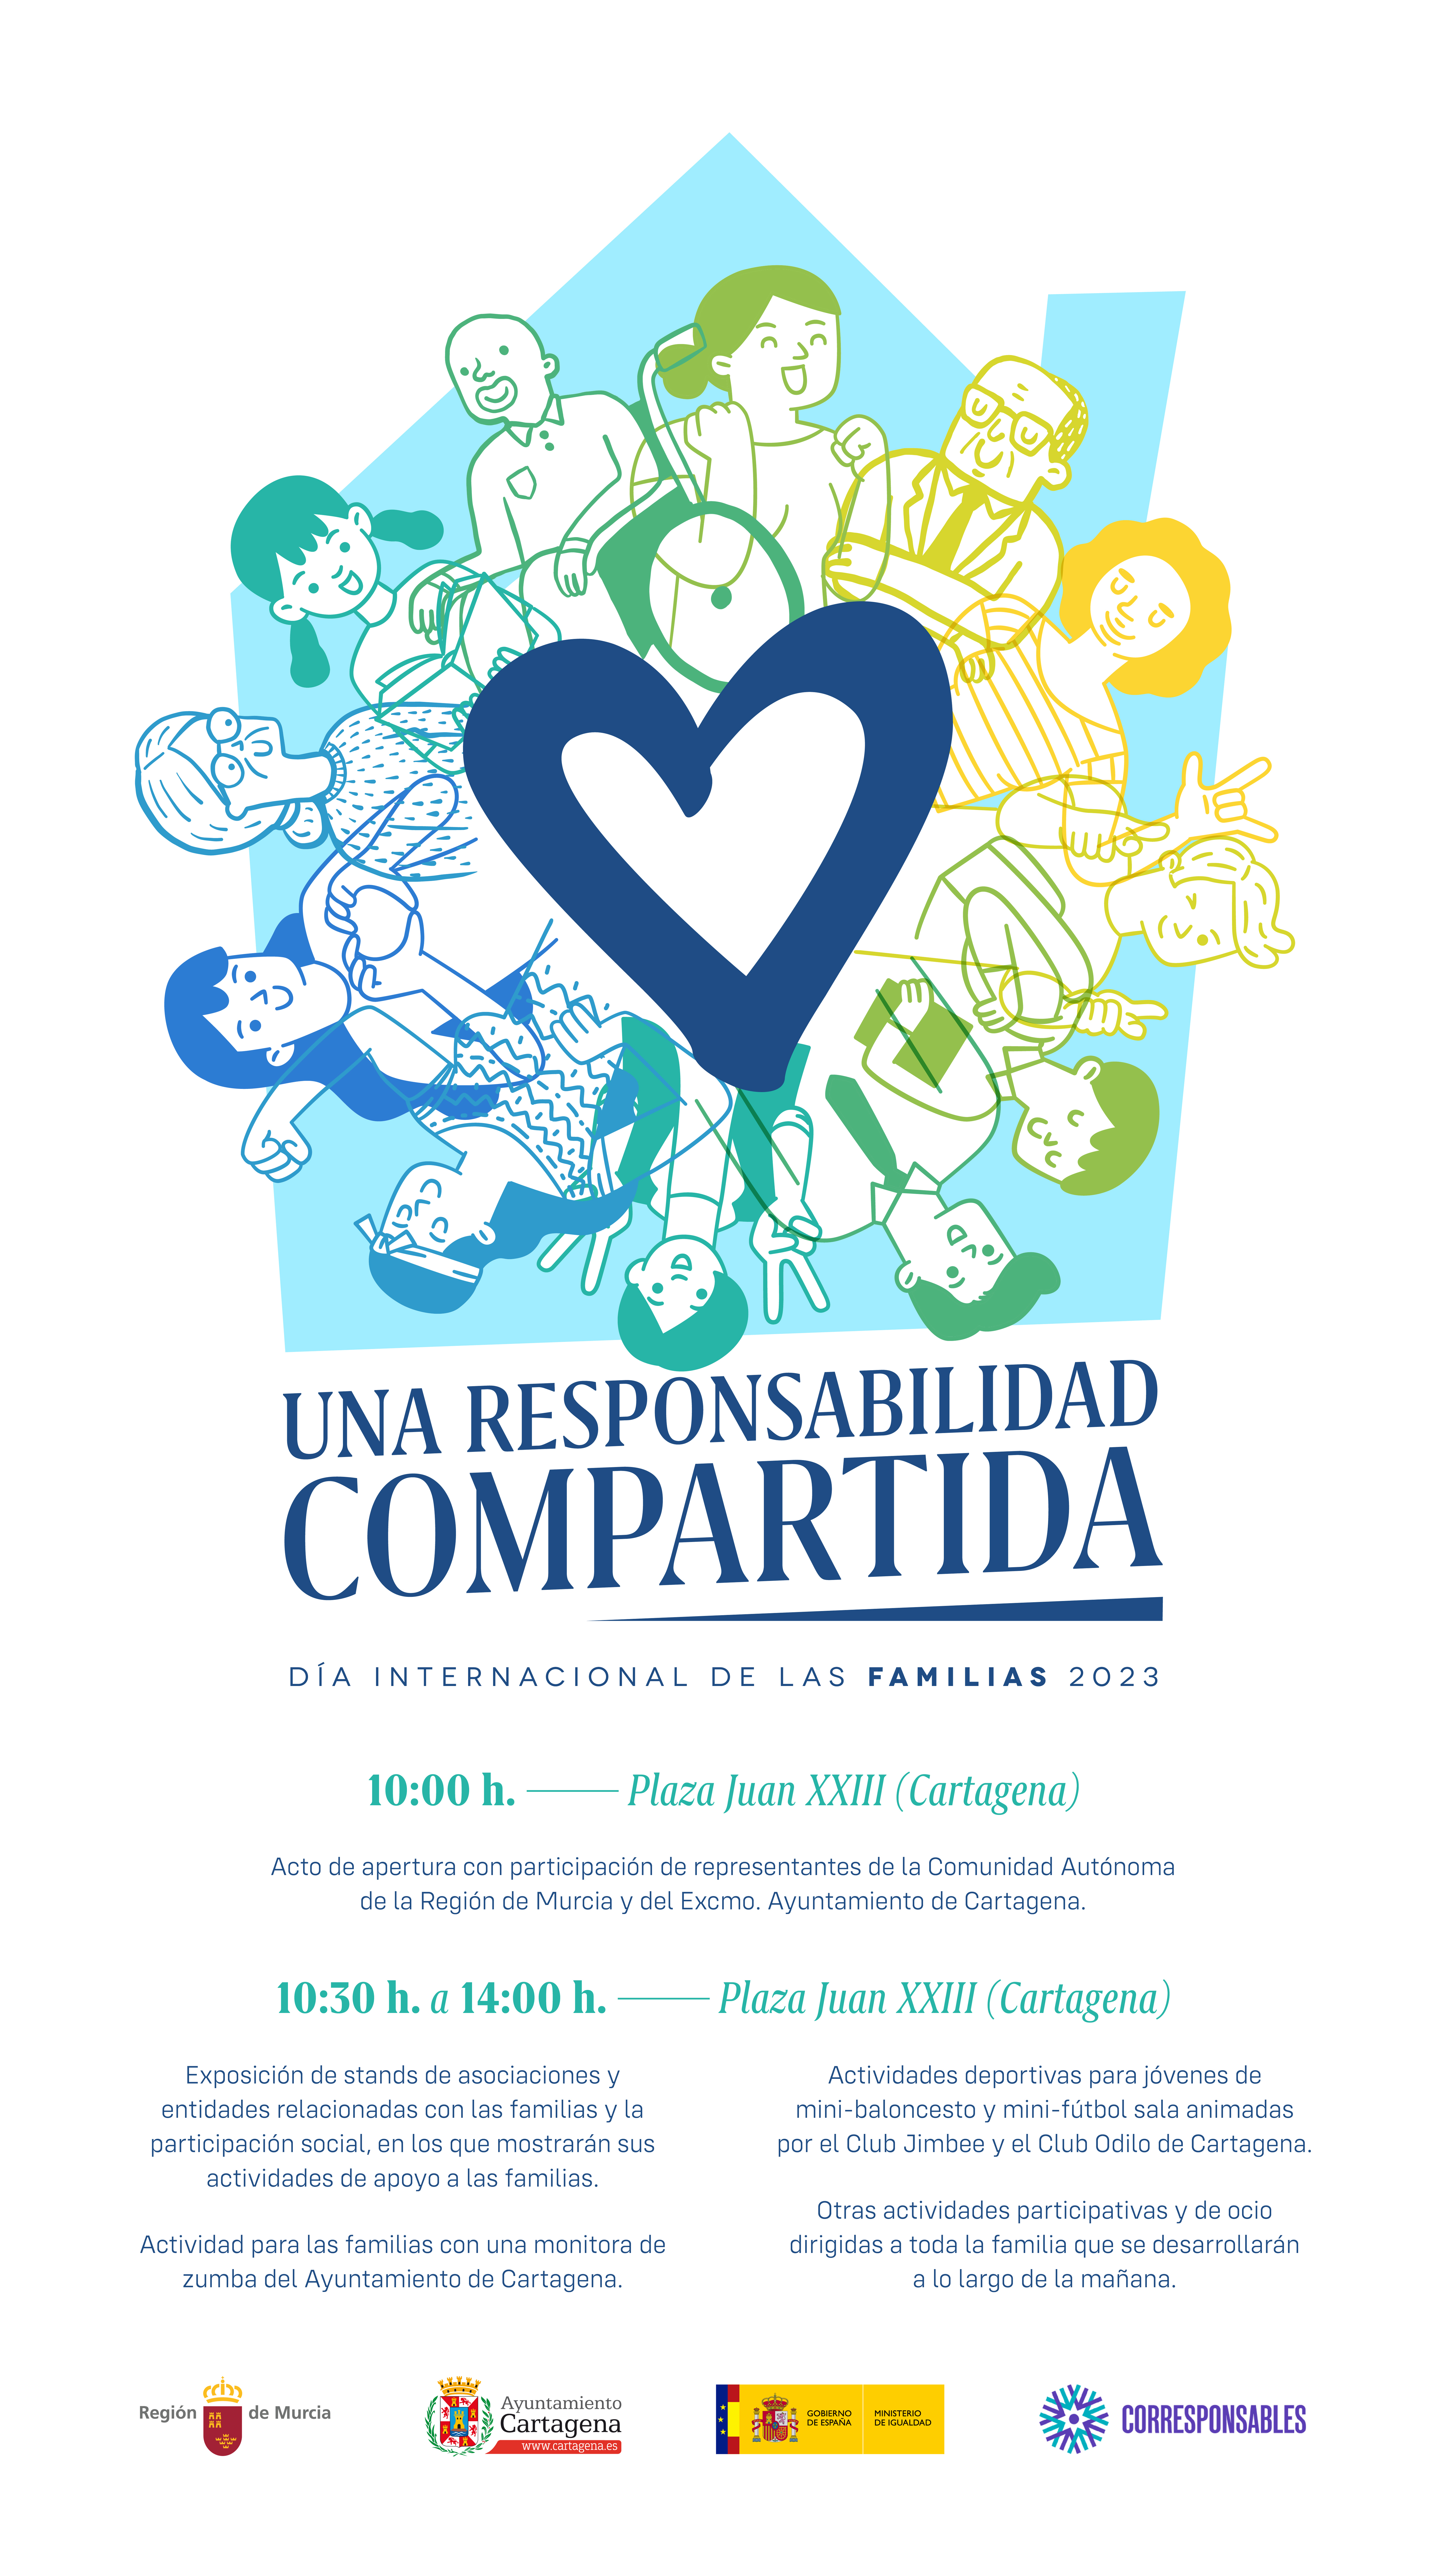 Cartel del Día Internacional de las Familias 2023 con el lema una responsabilidad compartida. Contiene el programa de actividades